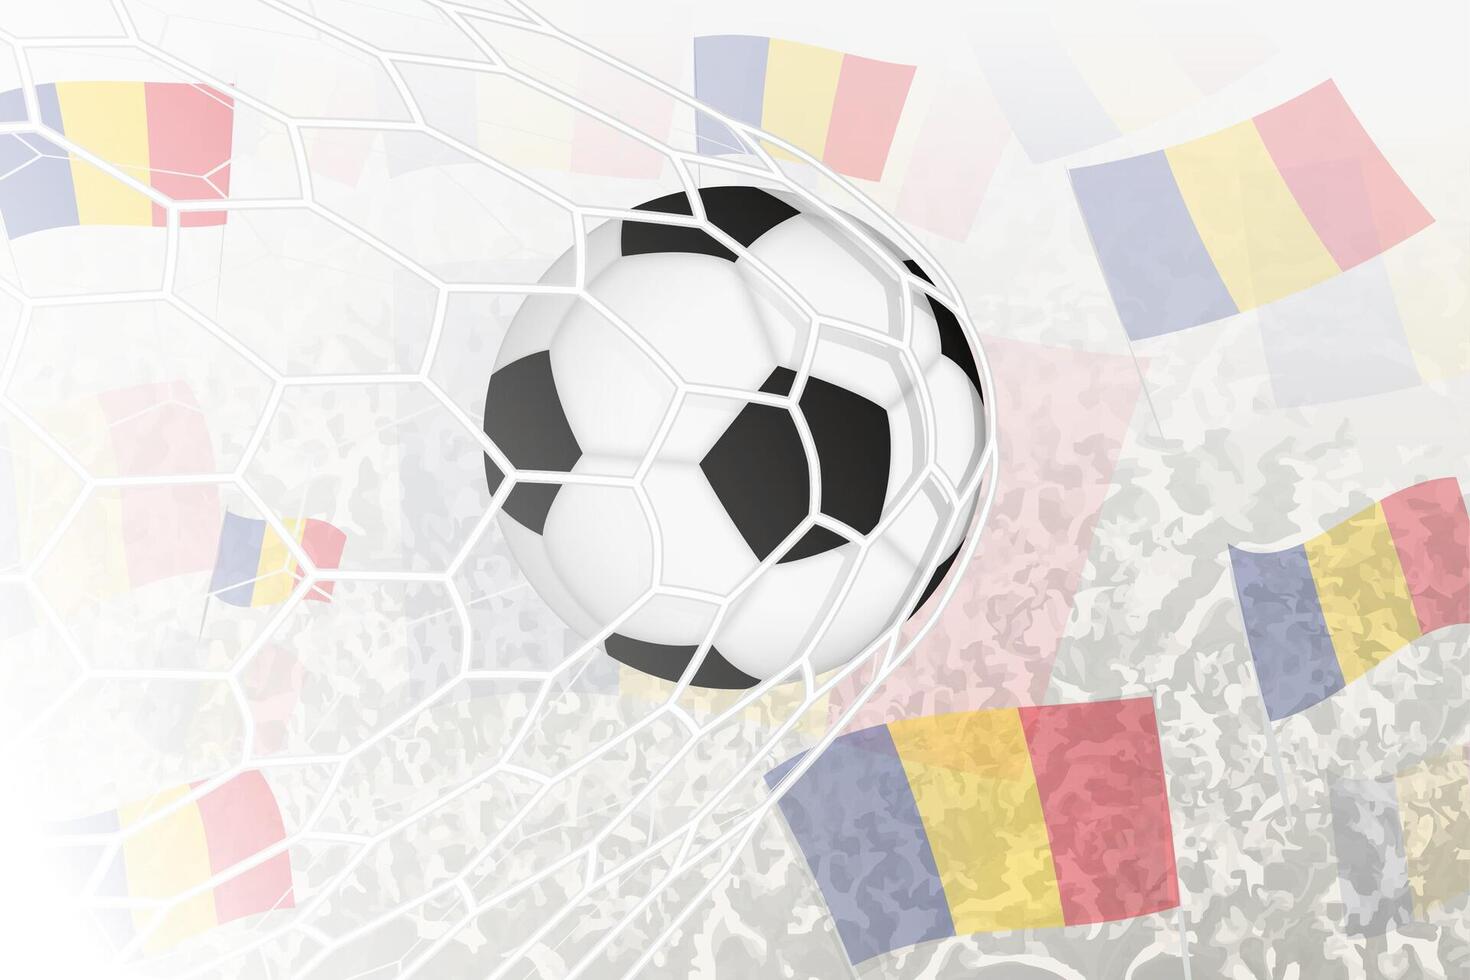 nationaal Amerikaans voetbal team van Roemenië scoorde doel. bal in doel netto, terwijl Amerikaans voetbal supporters zijn golvend de Roemenië vlag in de achtergrond. vector